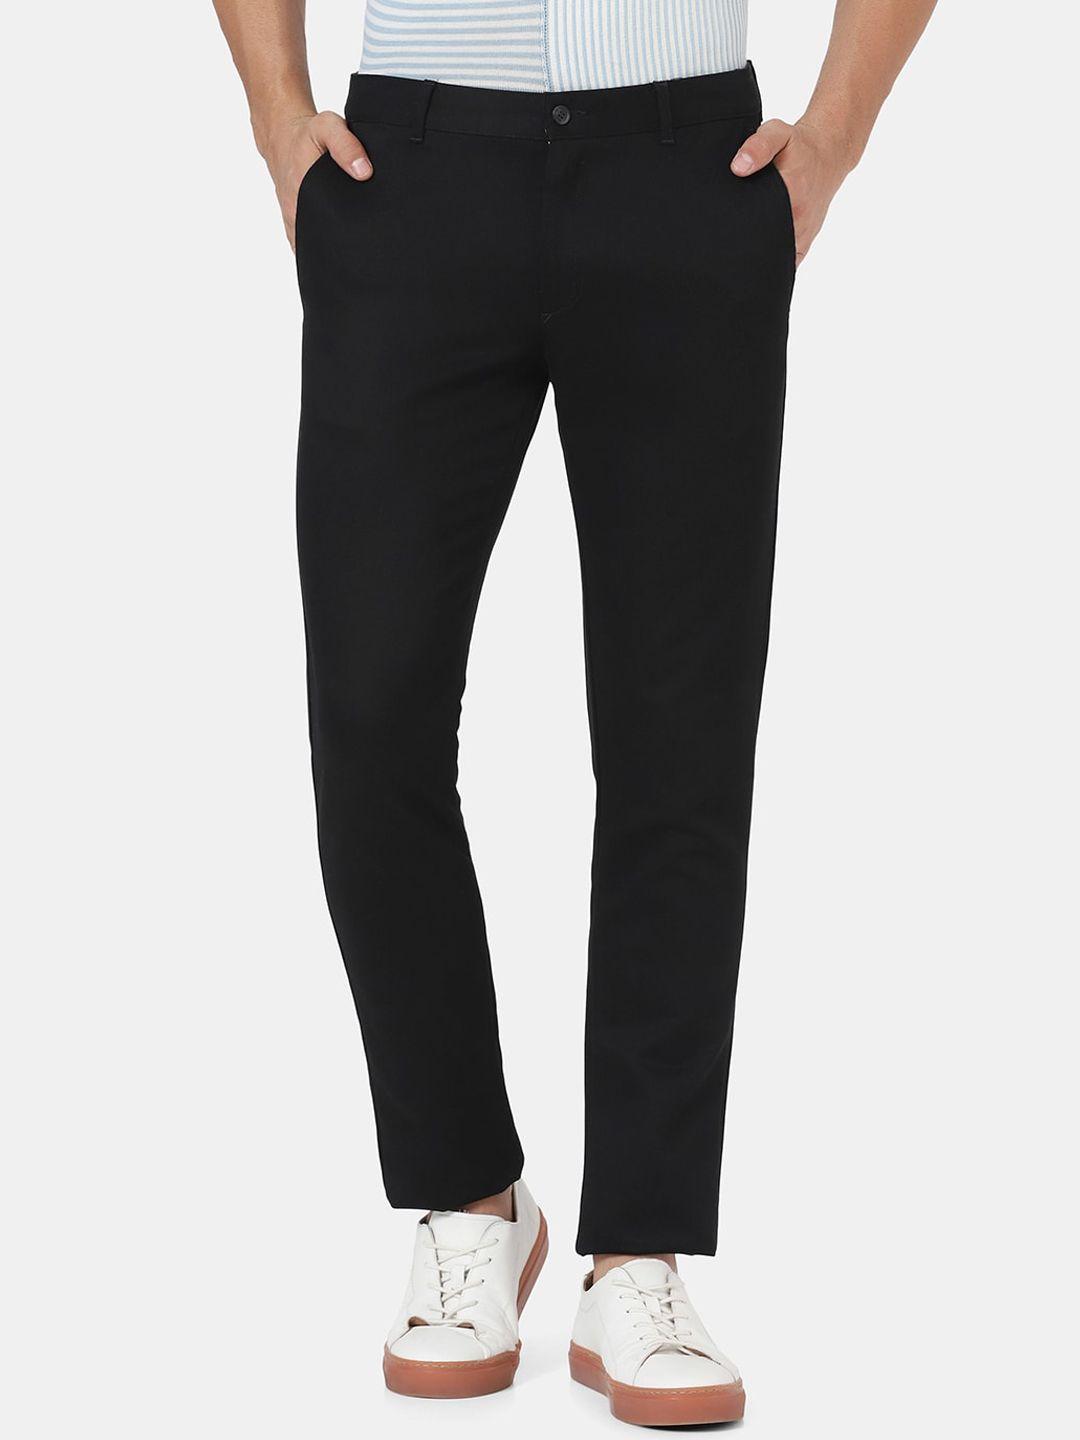 blackberrys-men-black-slim-fit-low-rise-trousers